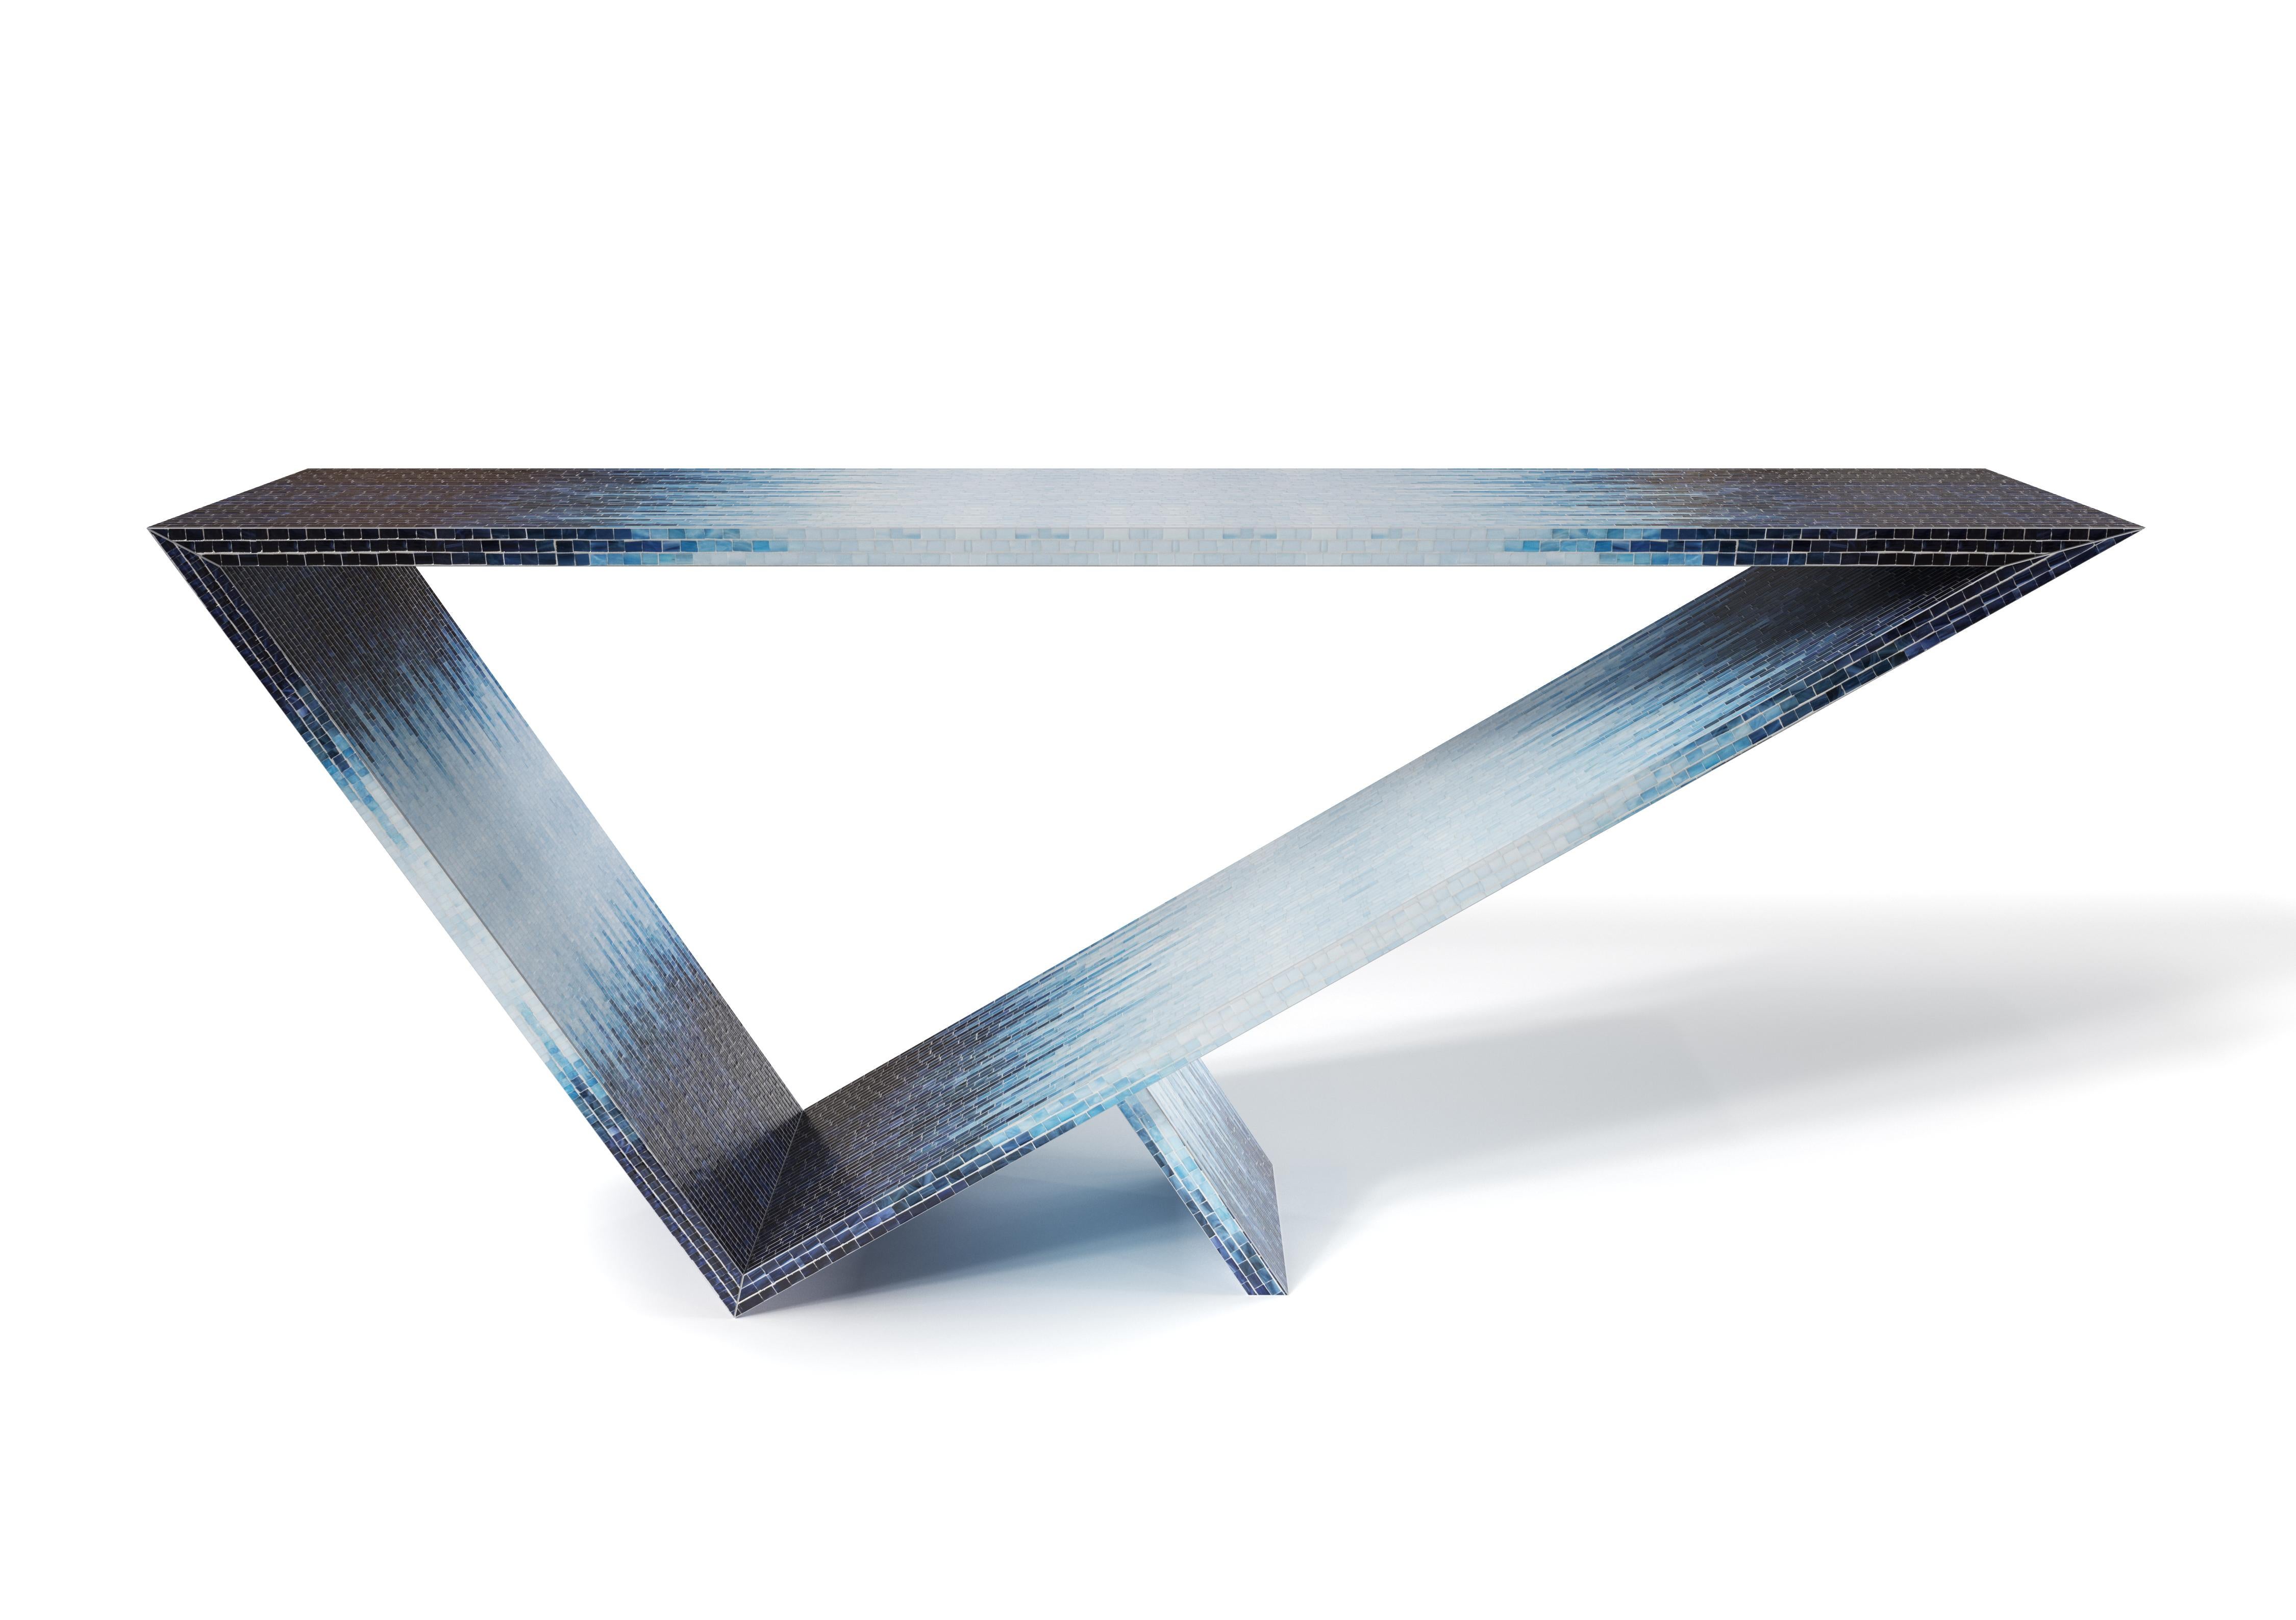 Console d'ombre bleue du portail Time/Space #1 par Neal Aronowitz Design
Dimensions : D 172,7 x L 43,2 x H 76,2 cm
Matériaux : Mosaïque de carreaux de verre.
Cette table peut être fabriquée dans n'importe quelle couleur ou motif de mosaïque